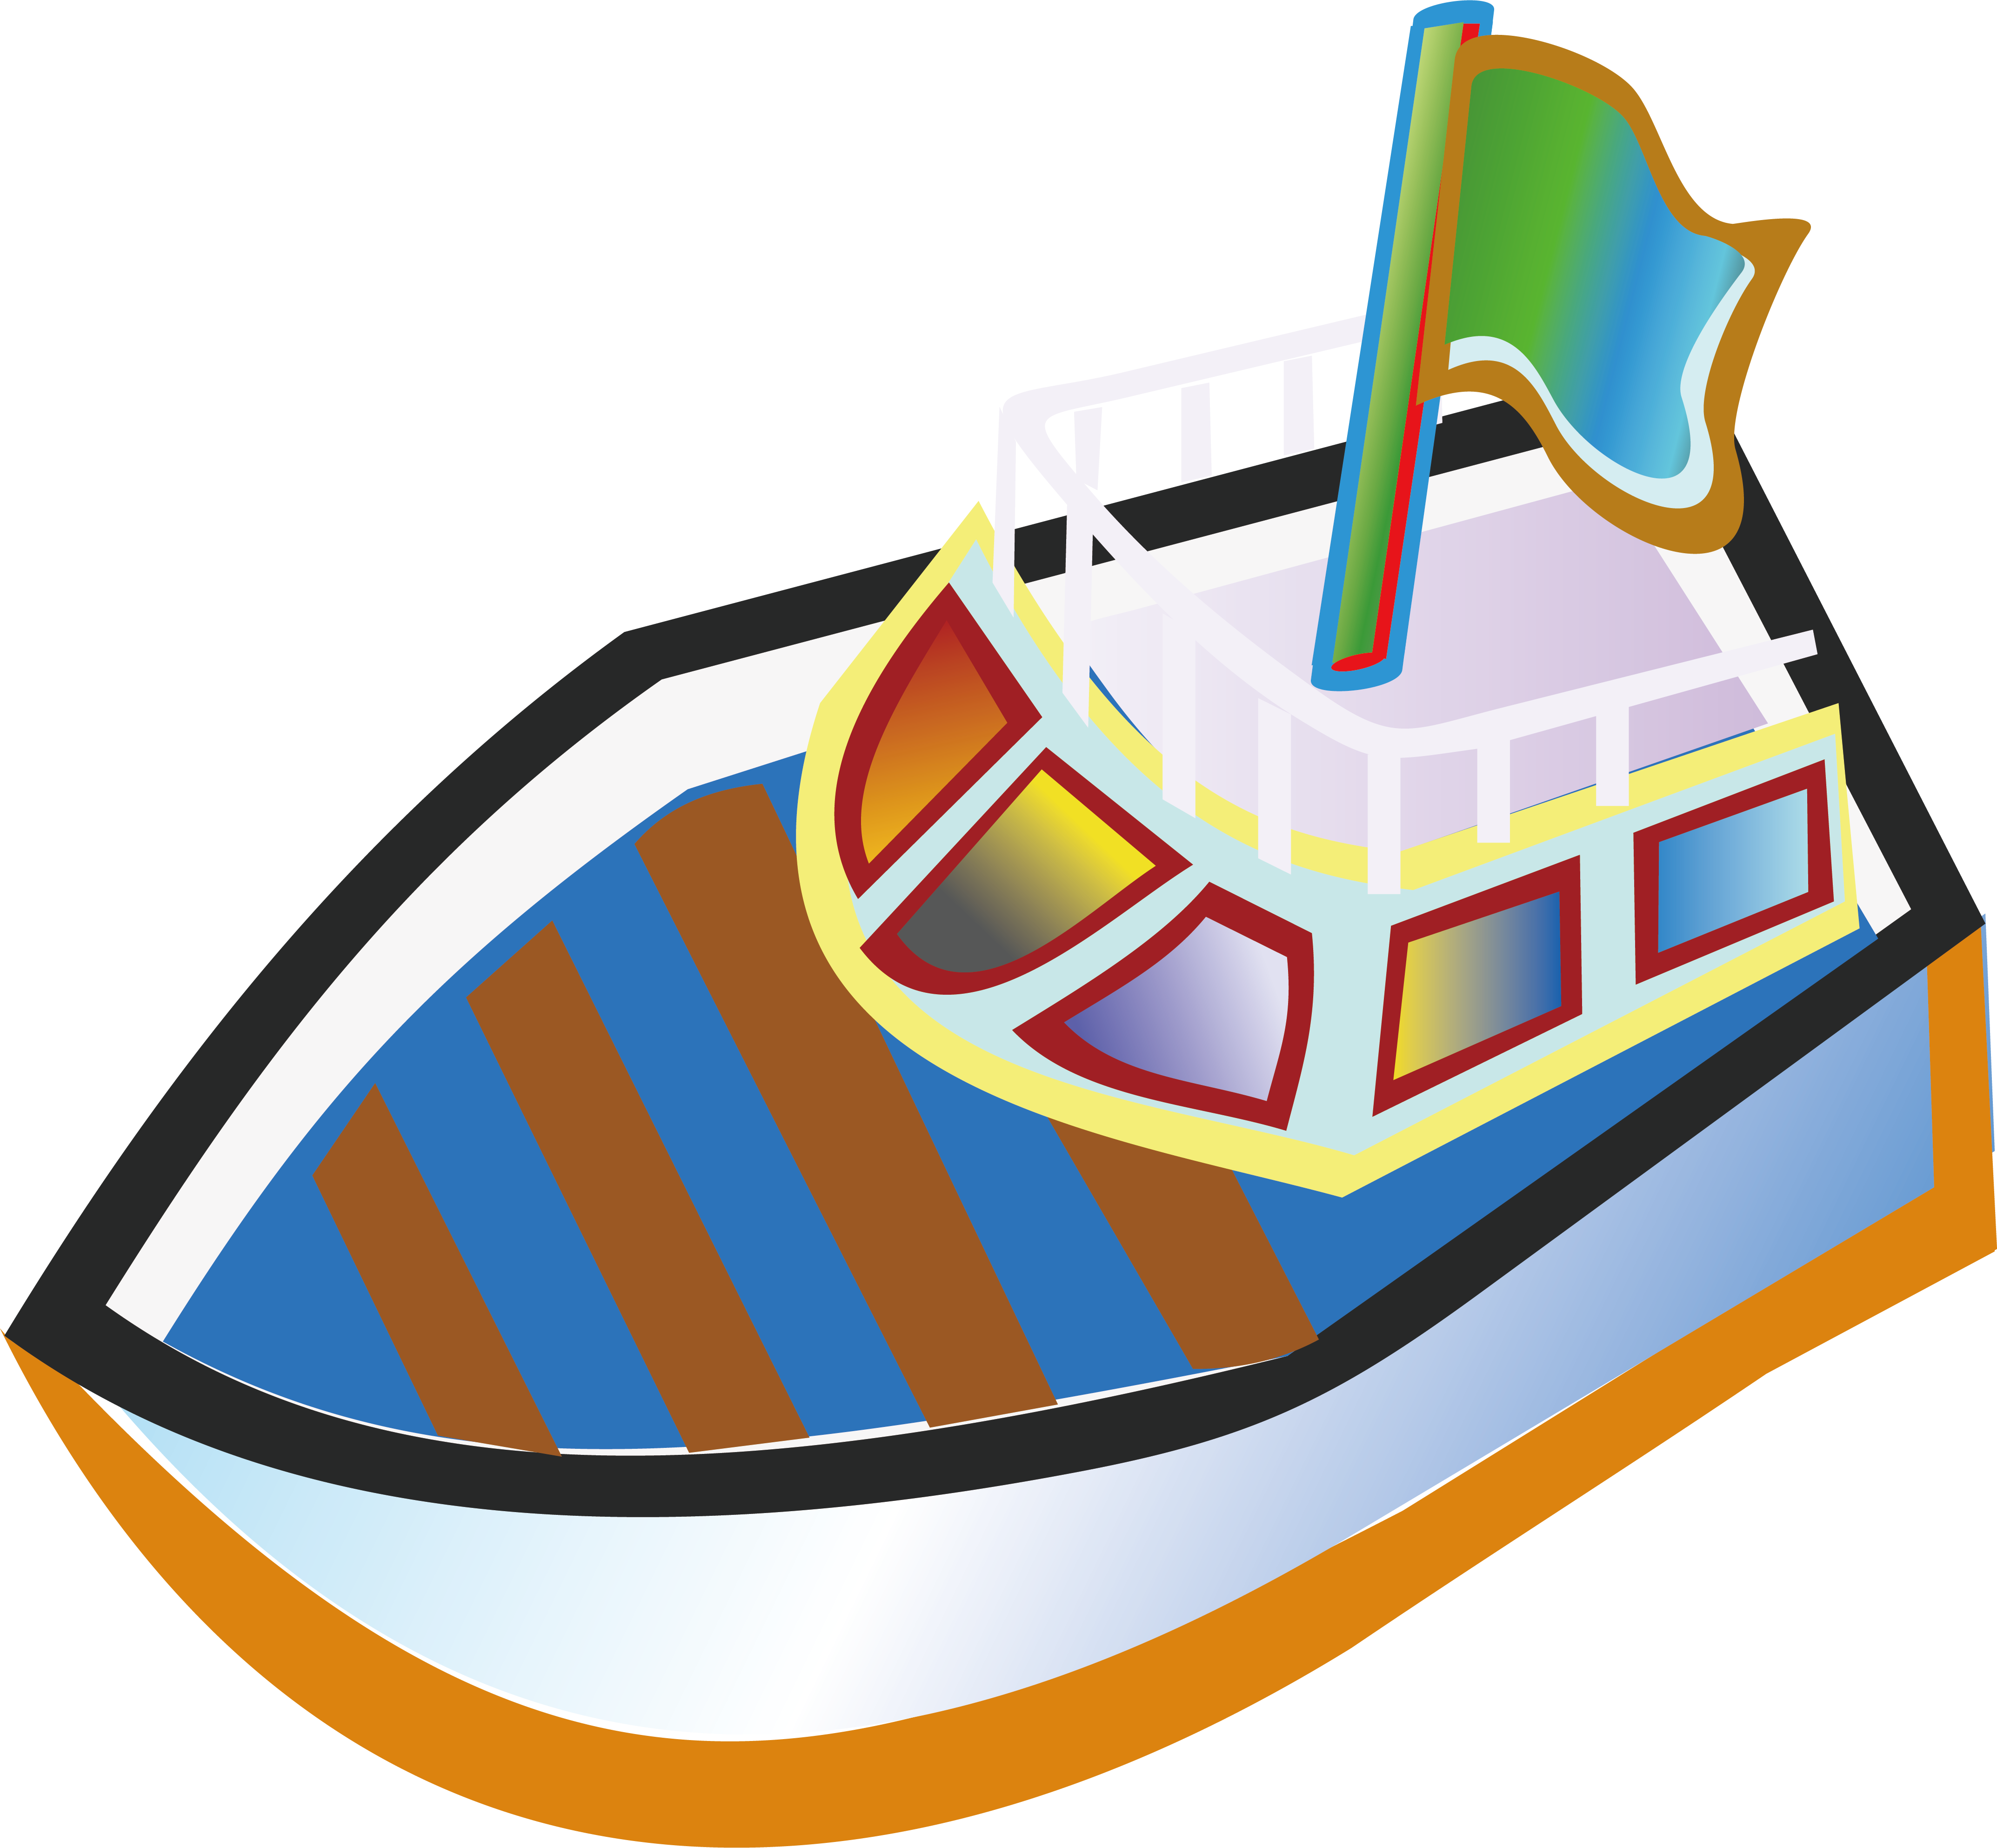 Моторная лодка рисунок для детей